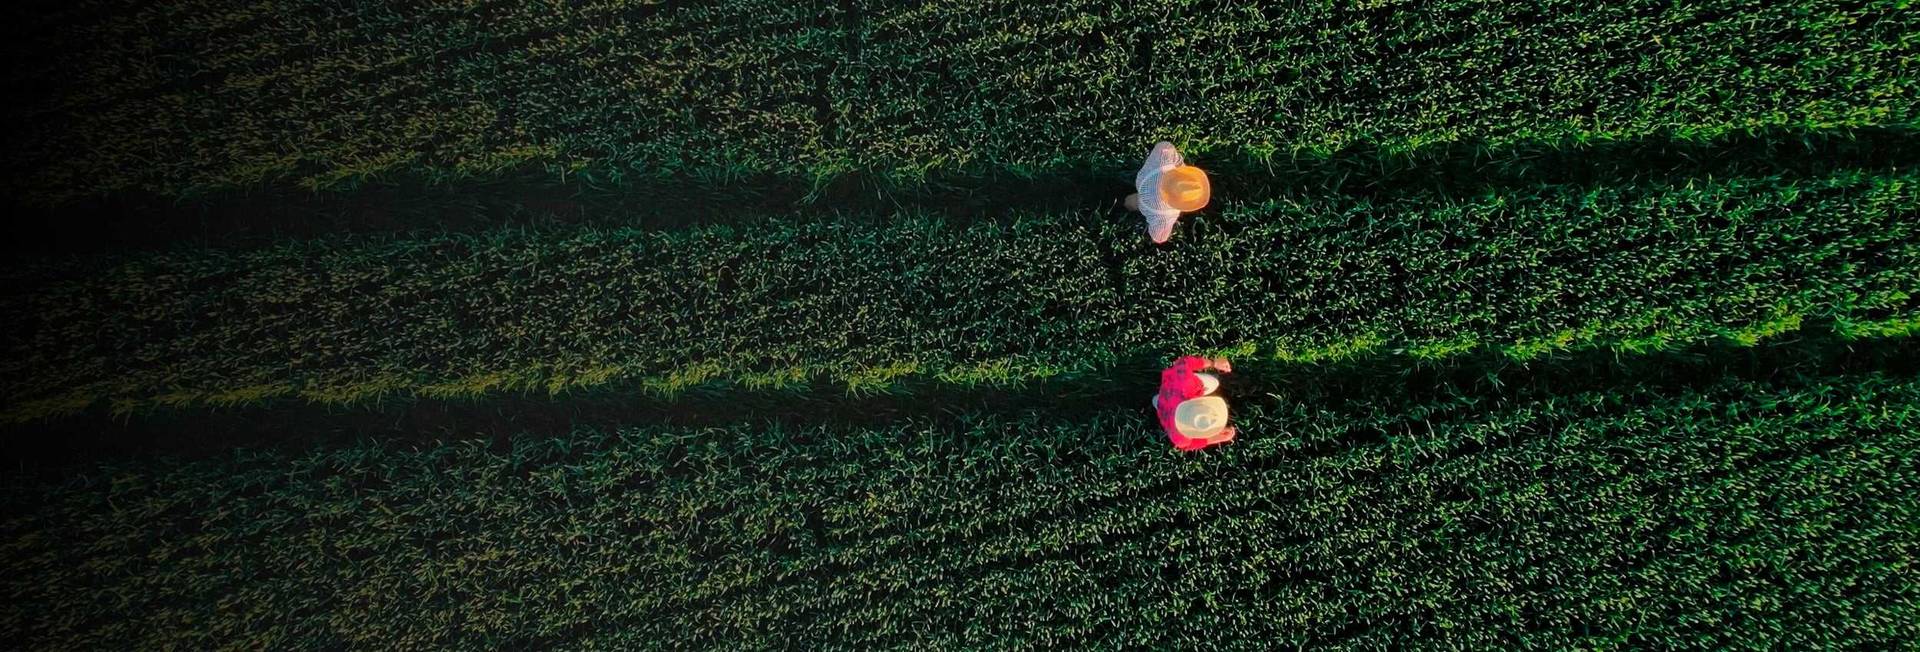 Two men in crop field